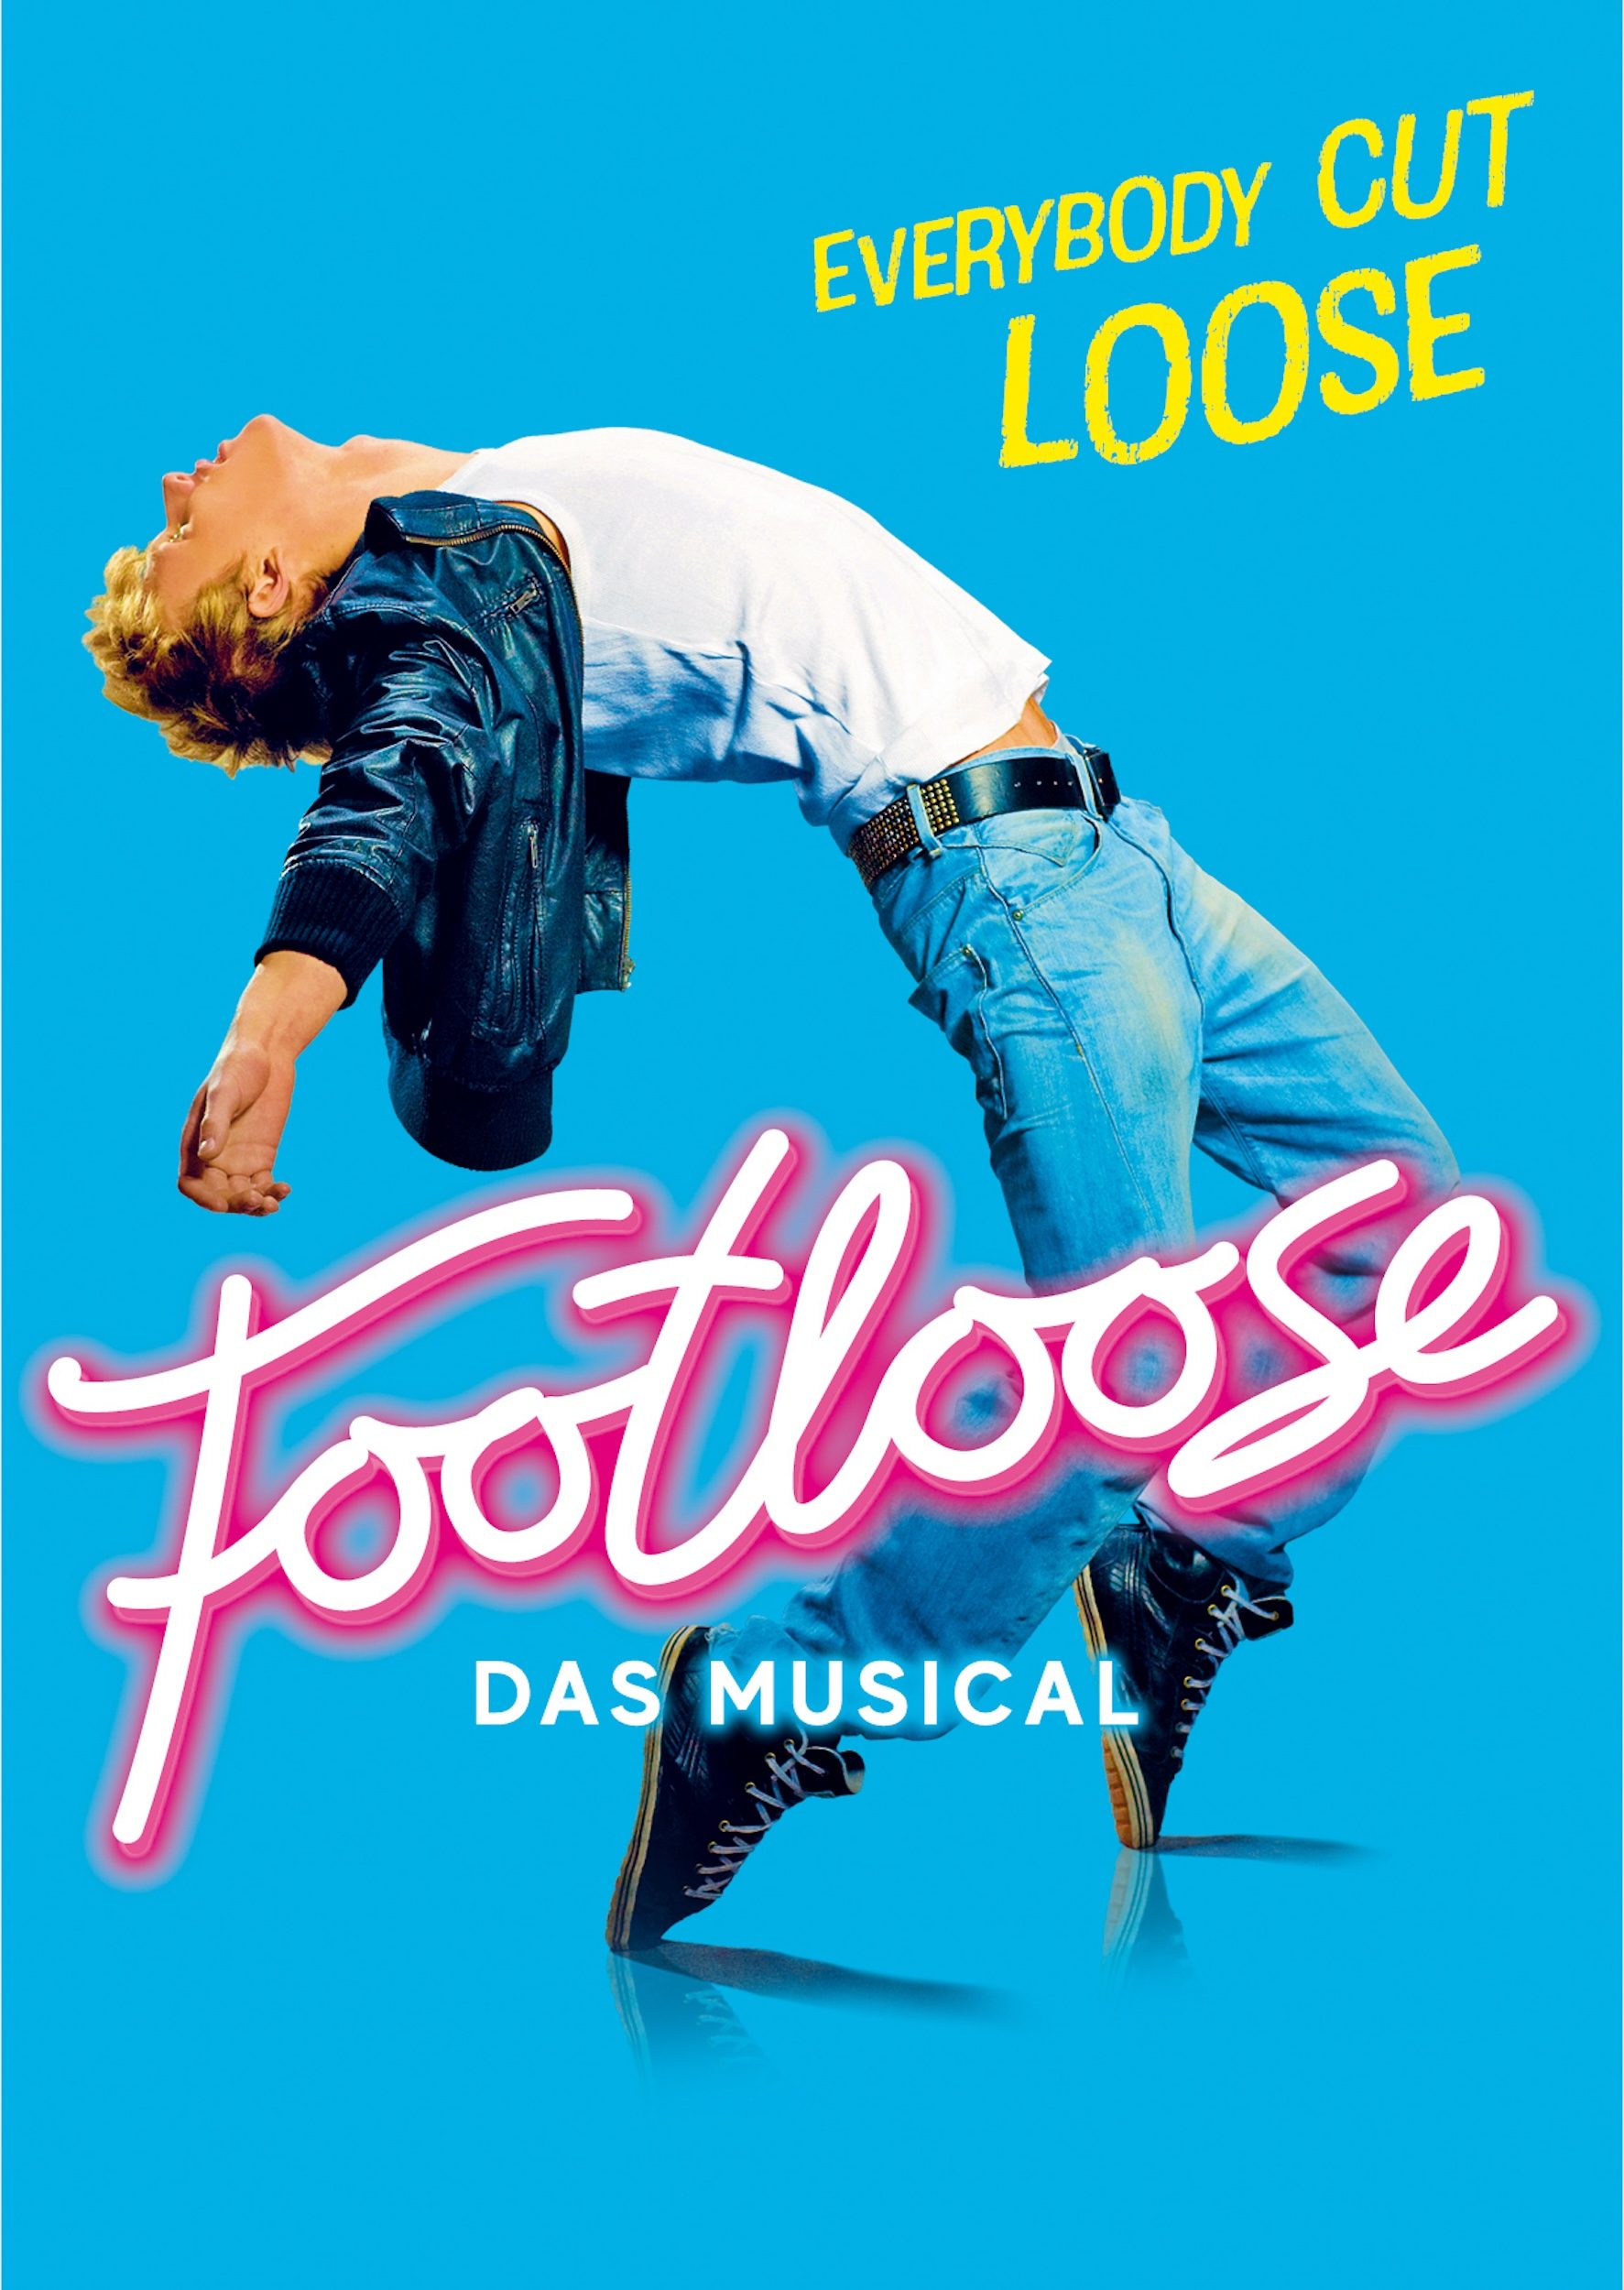 Das Musical Footloose gastiert in der Wiener Stadthalle.